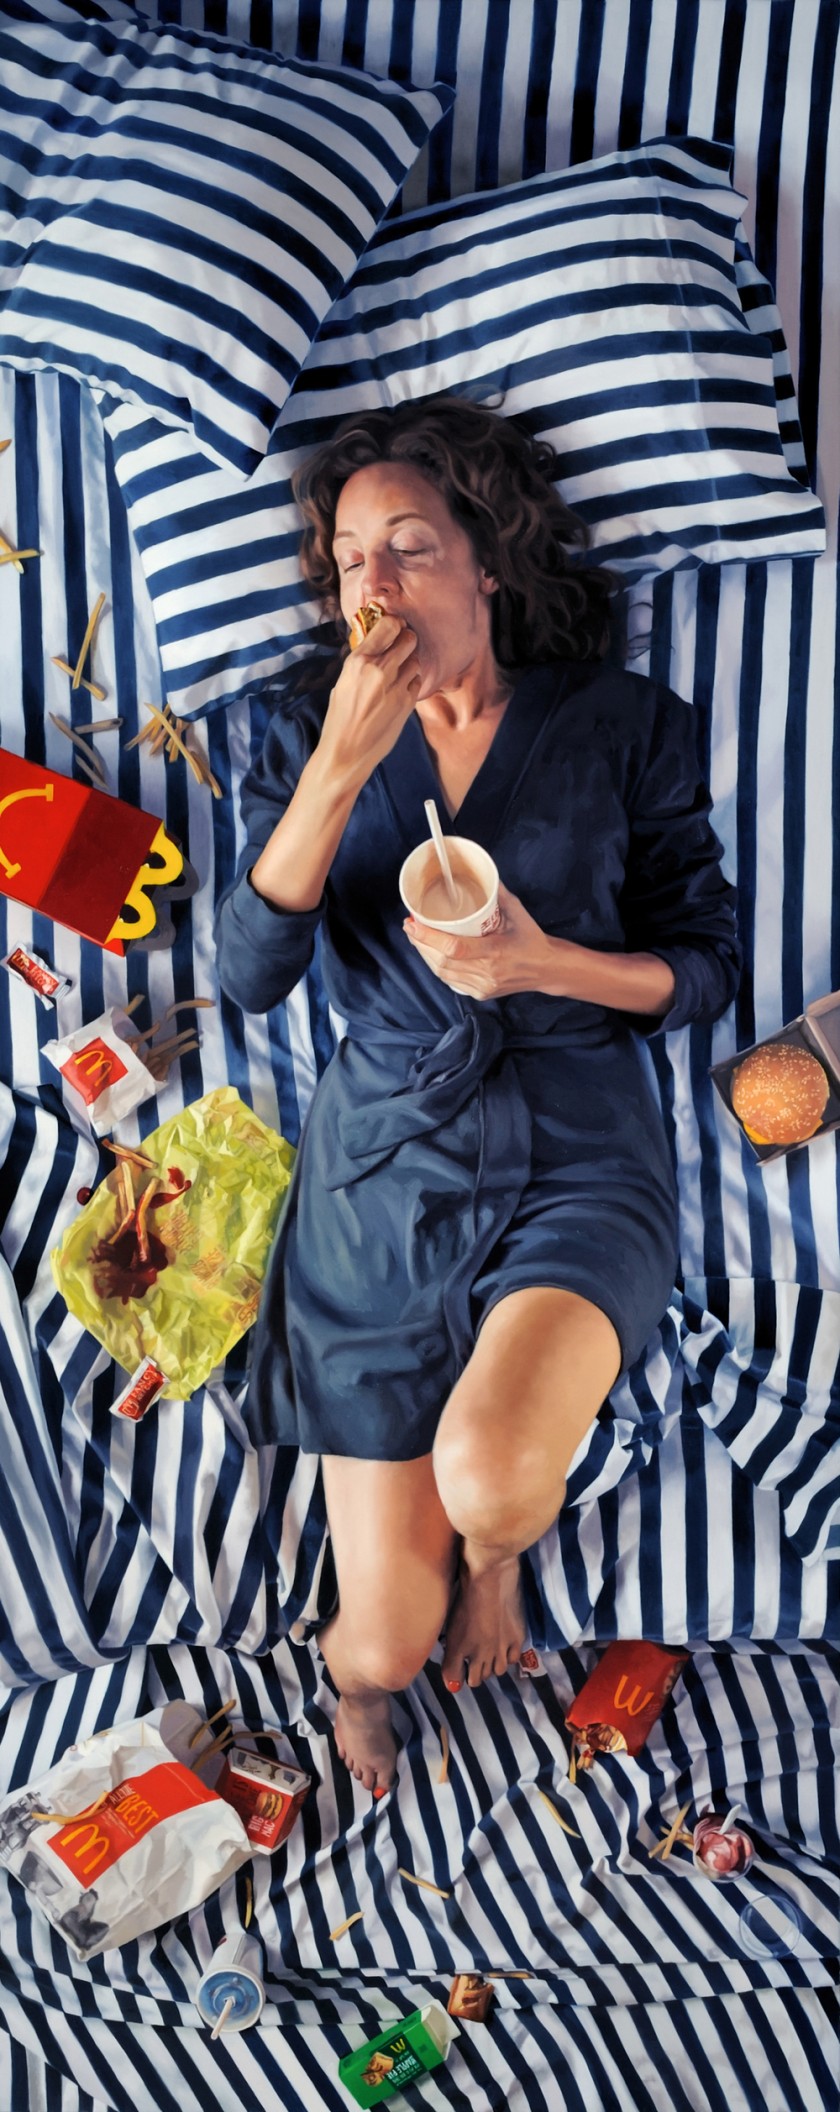 Женщины и еда в гиперреалистичных картинах Ли Прайс